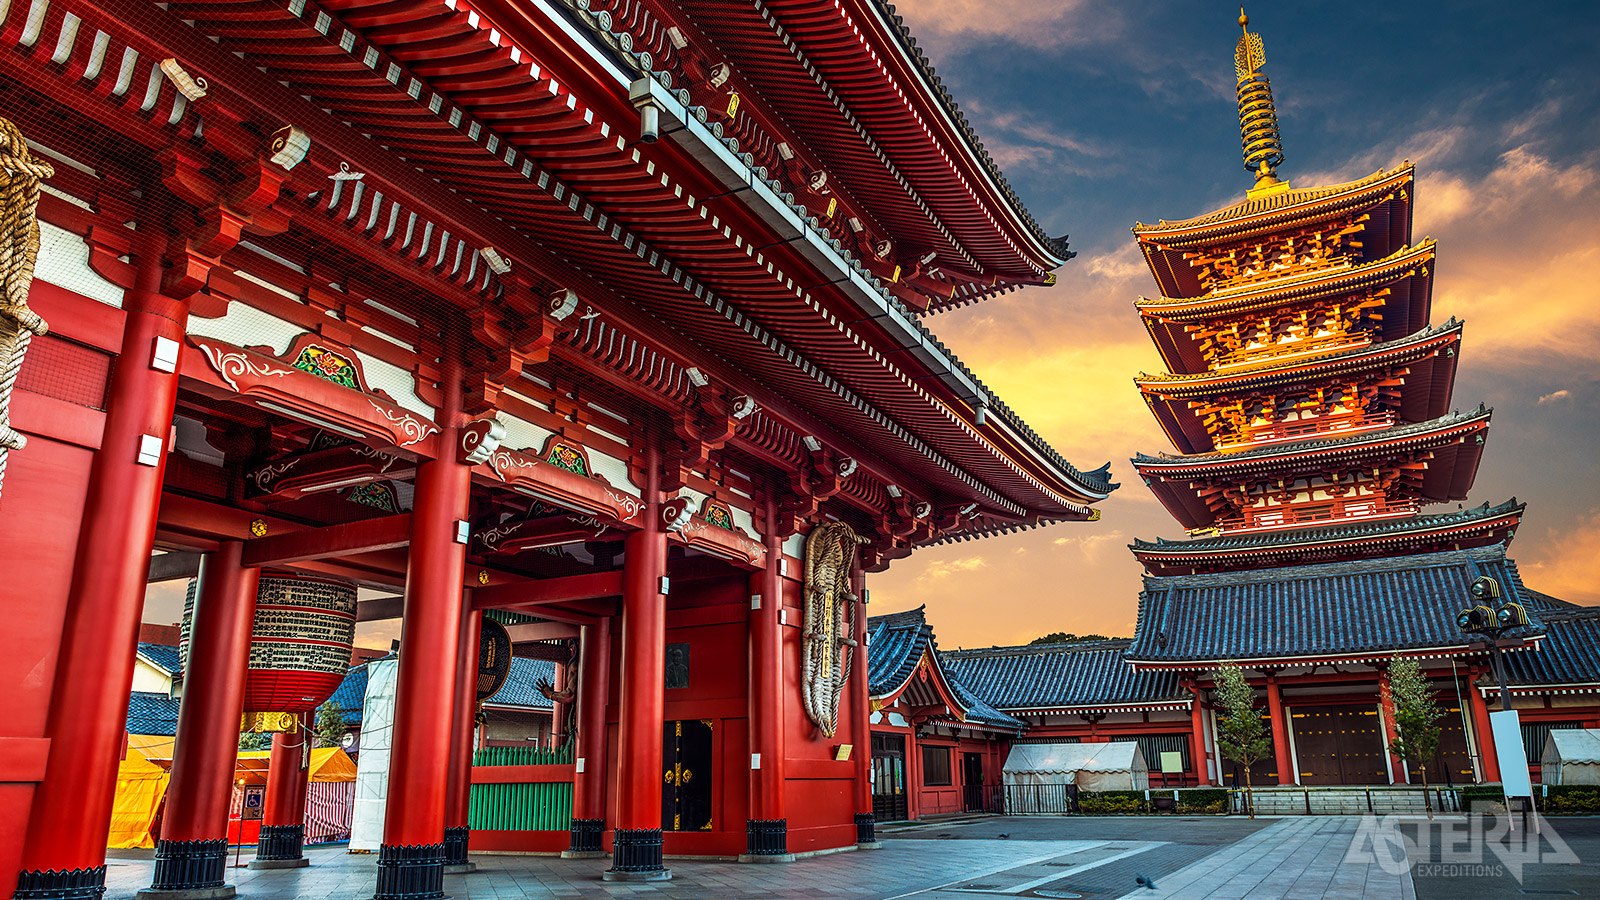 Veruit de oudste en beroemdste tempel in Tokyo is de Senso-ji-tempel